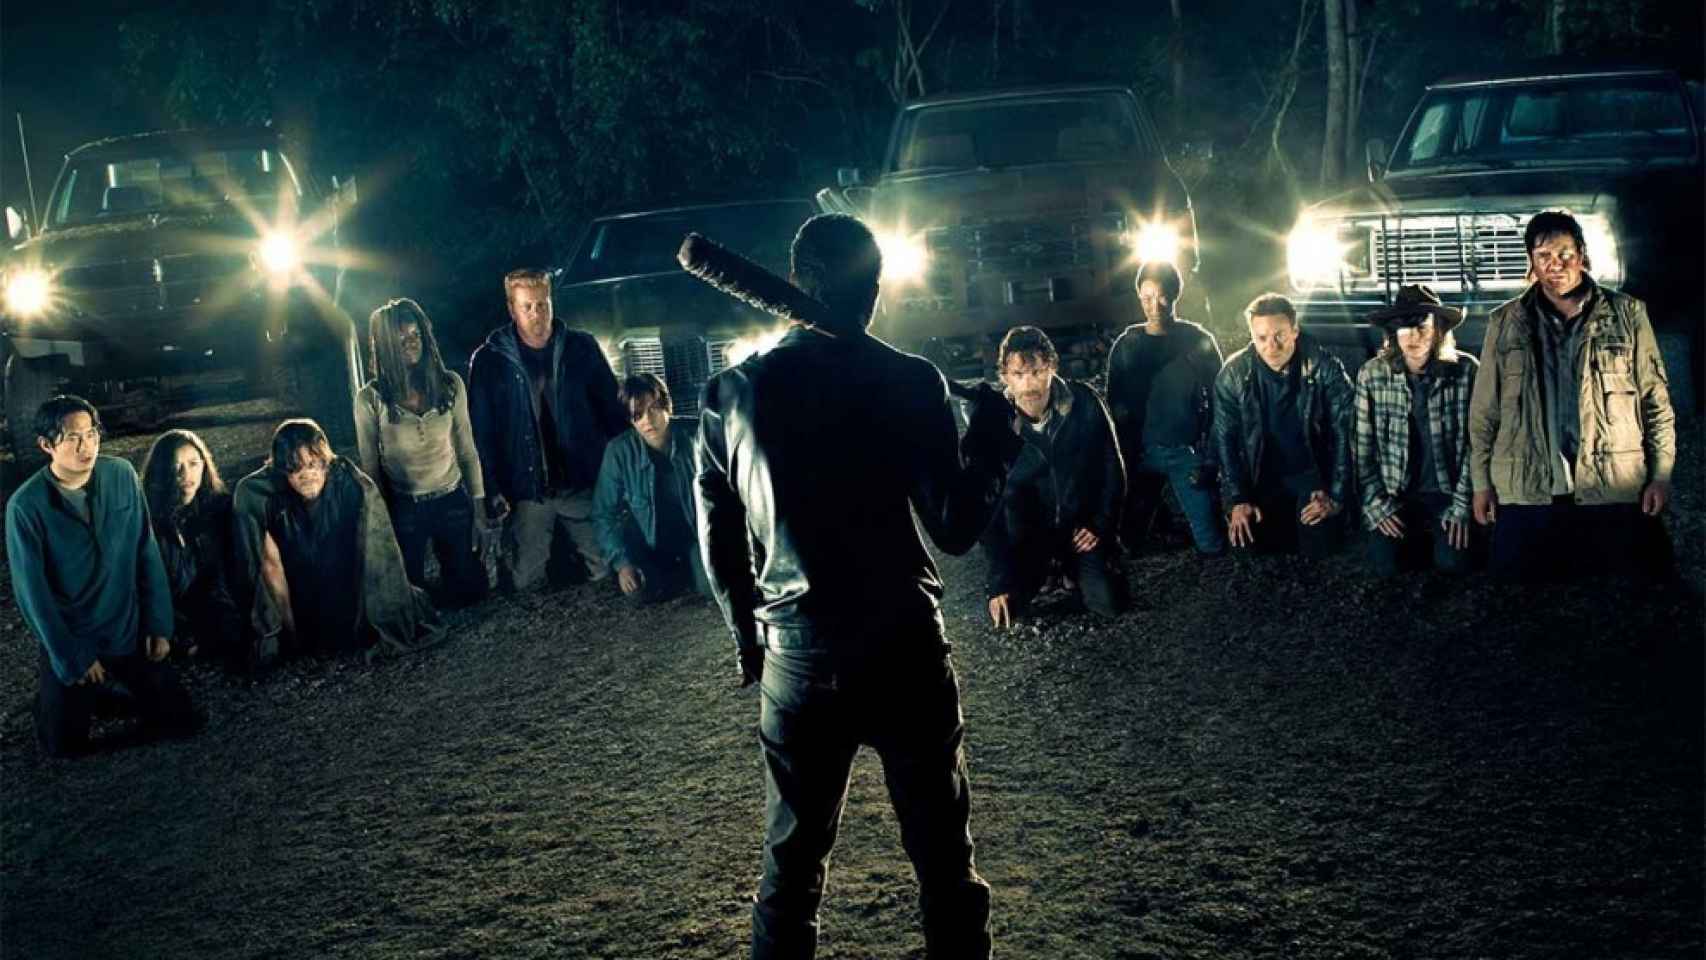  Por qué no lloraré la muerte de ESE personaje de ‘The Walking Dead’